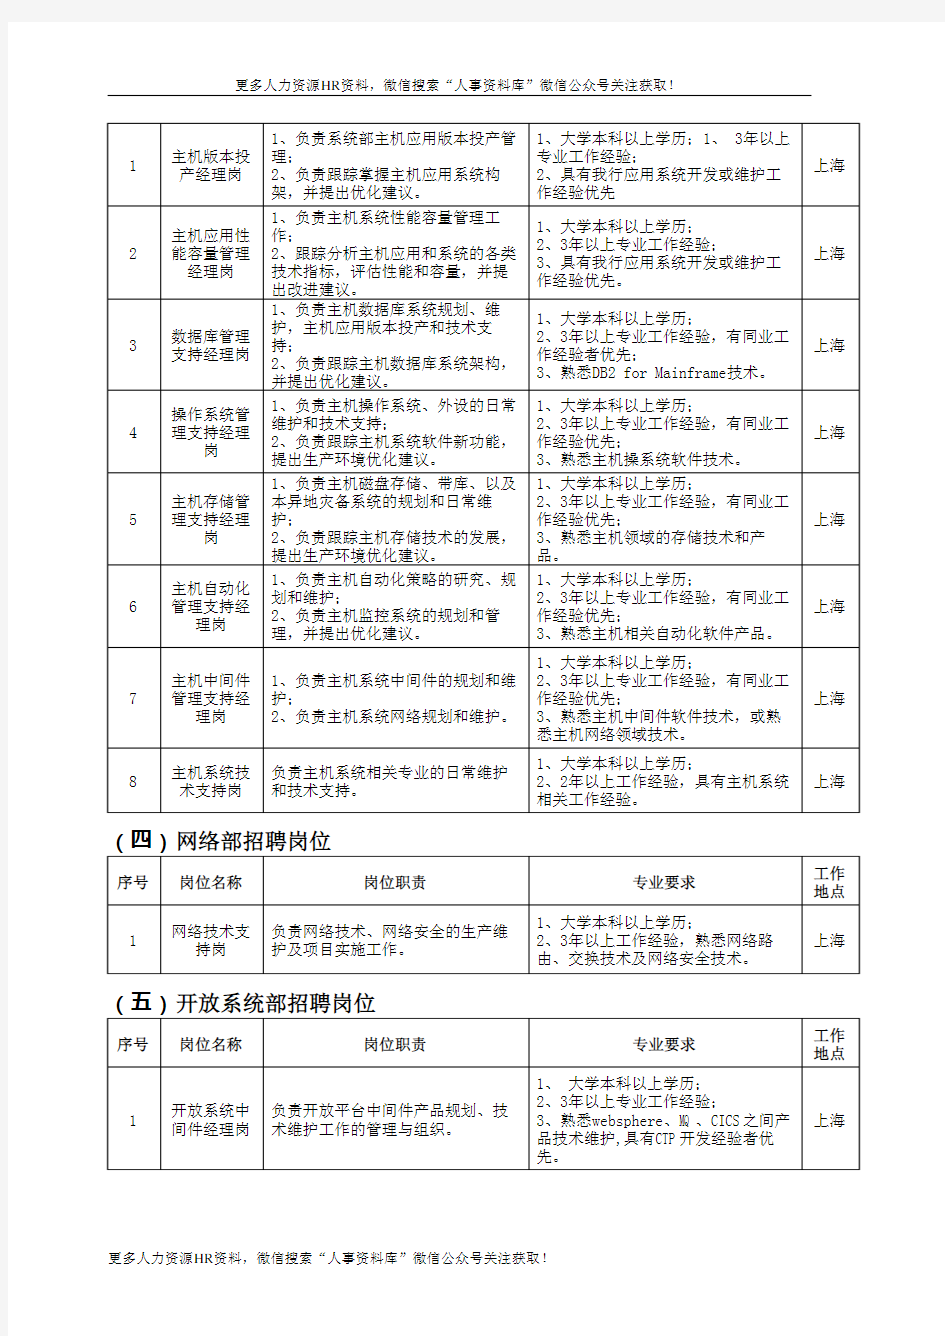 社招-中国工商银行数据中心(上海)社会招聘岗位及要求